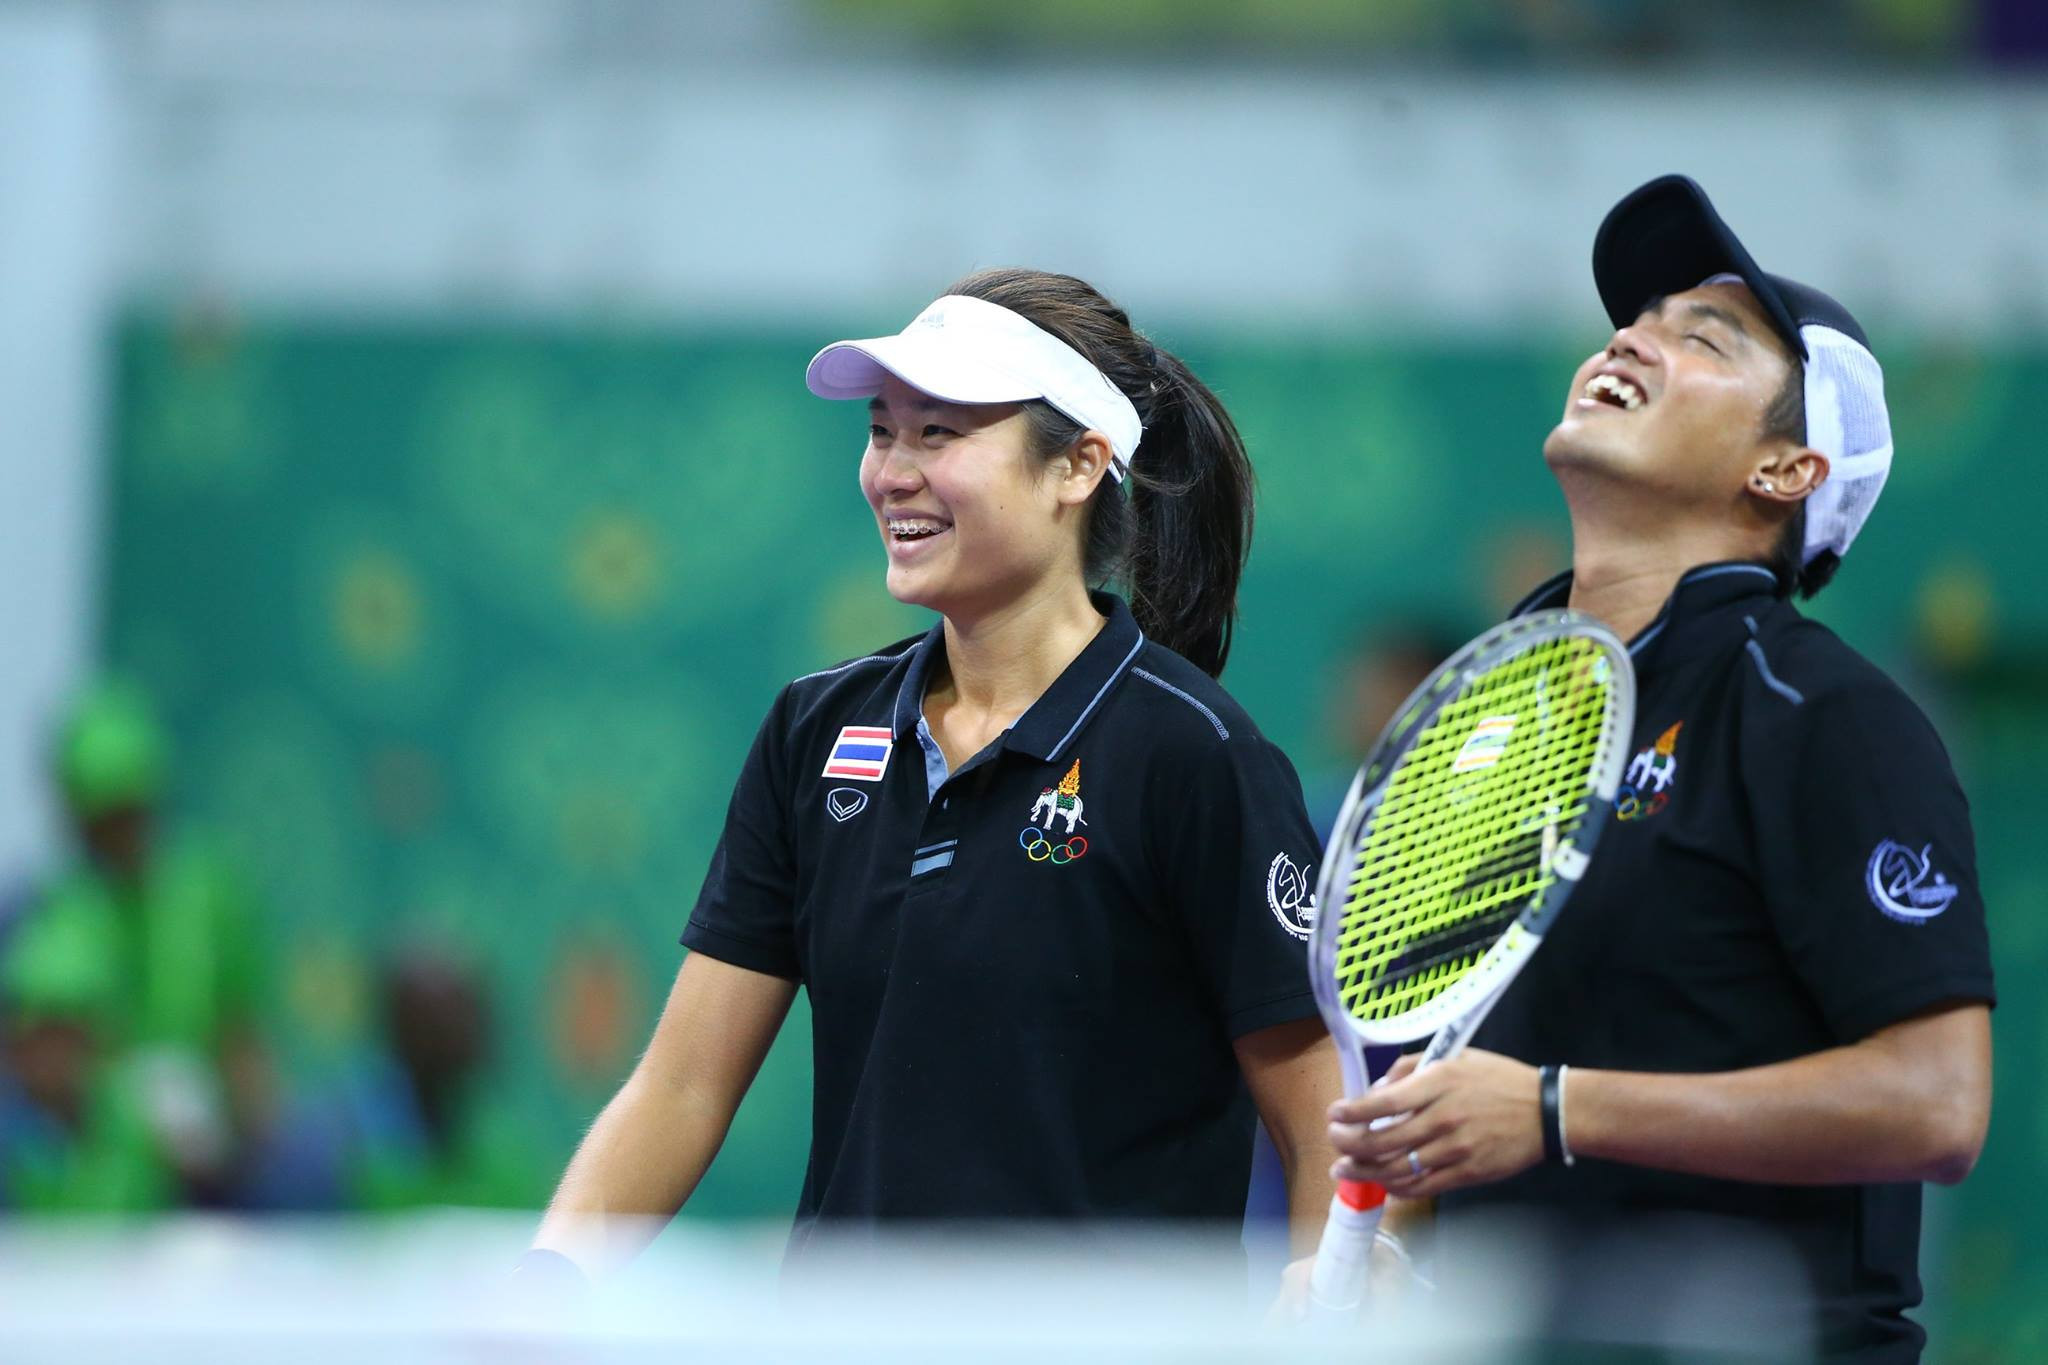 Thailand's Nuttanon Kadchapanan and Nicha Lertpitaksinchai won the mixed doubles indoor tennis title ©Ashgabat 2017/Facebook